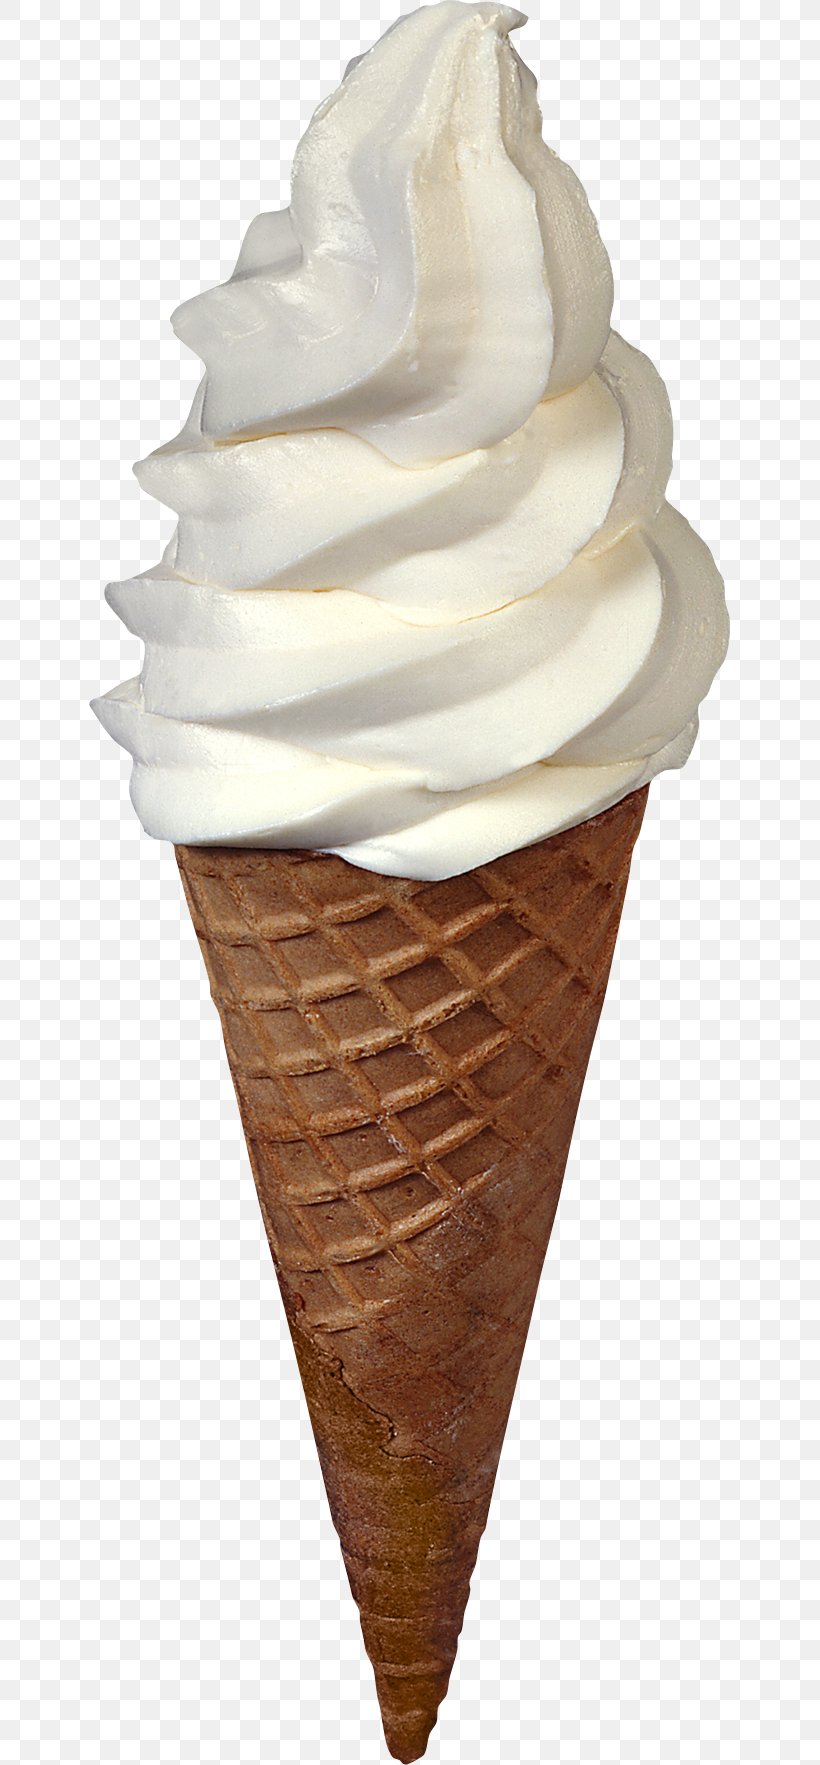 Ice Cream Cone Neapolitan Ice Cream Sundae, PNG, 641x1765px, Ice Cream, Chocolate Ice Cream, Cream, Dairy Product, Dessert Download Free